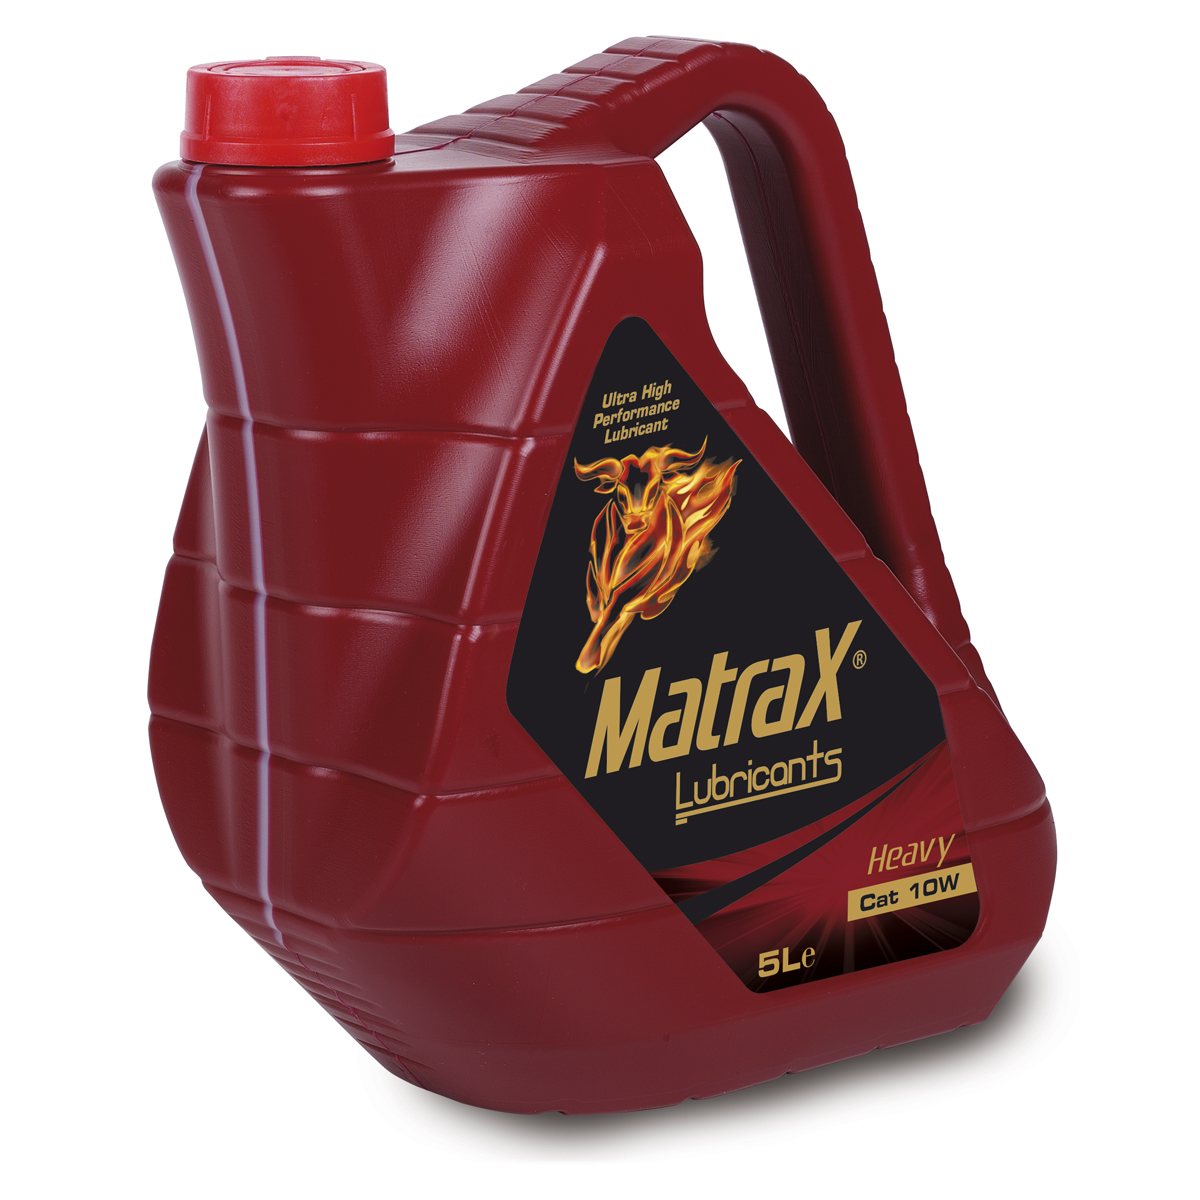 matrax-lubricants-heavy-cat-10w-5l